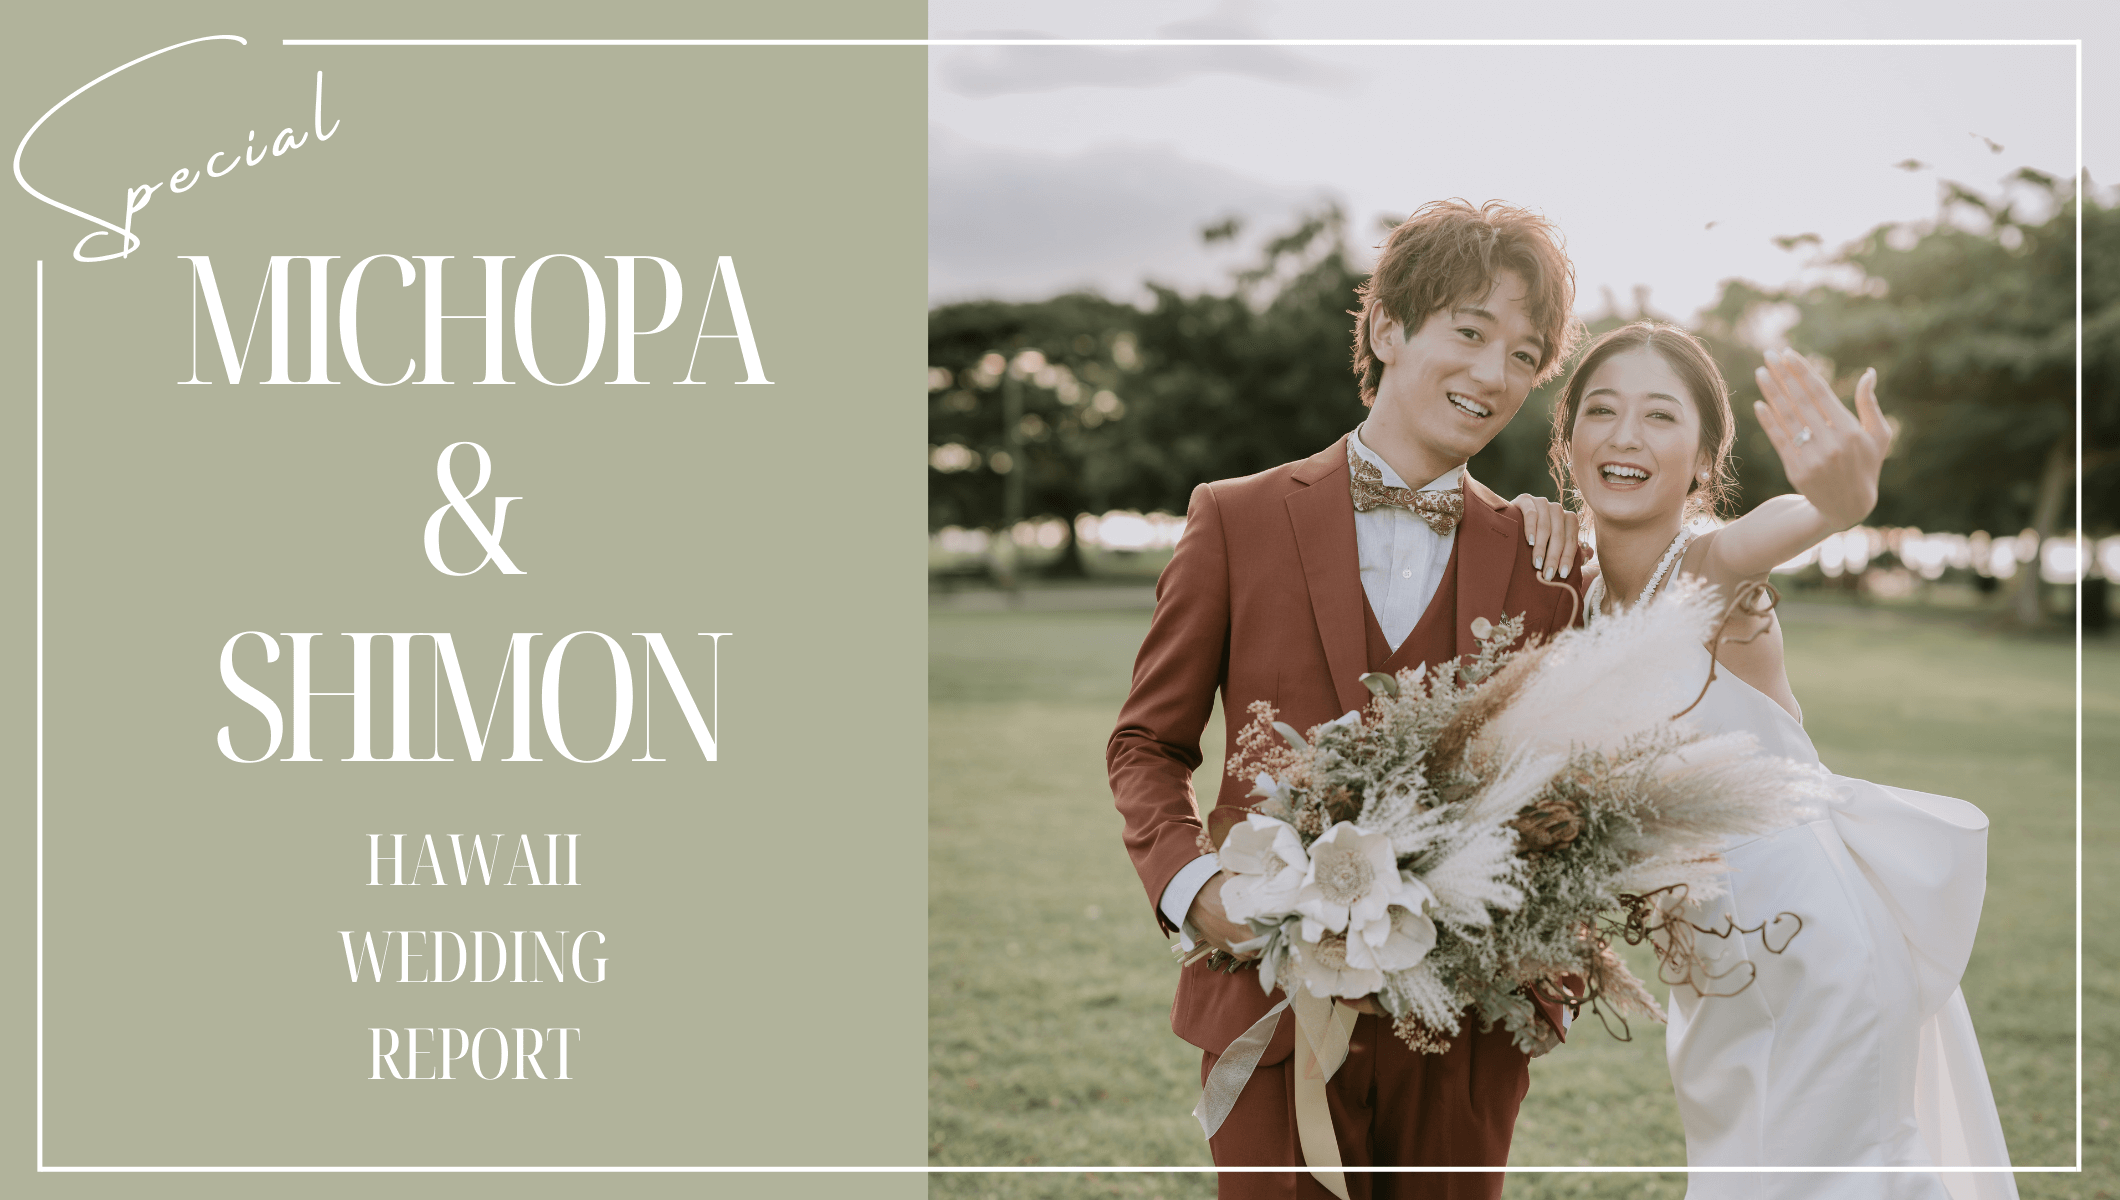 写真:MICHOPA & SHIMON HAWAII WEDDING REPORT